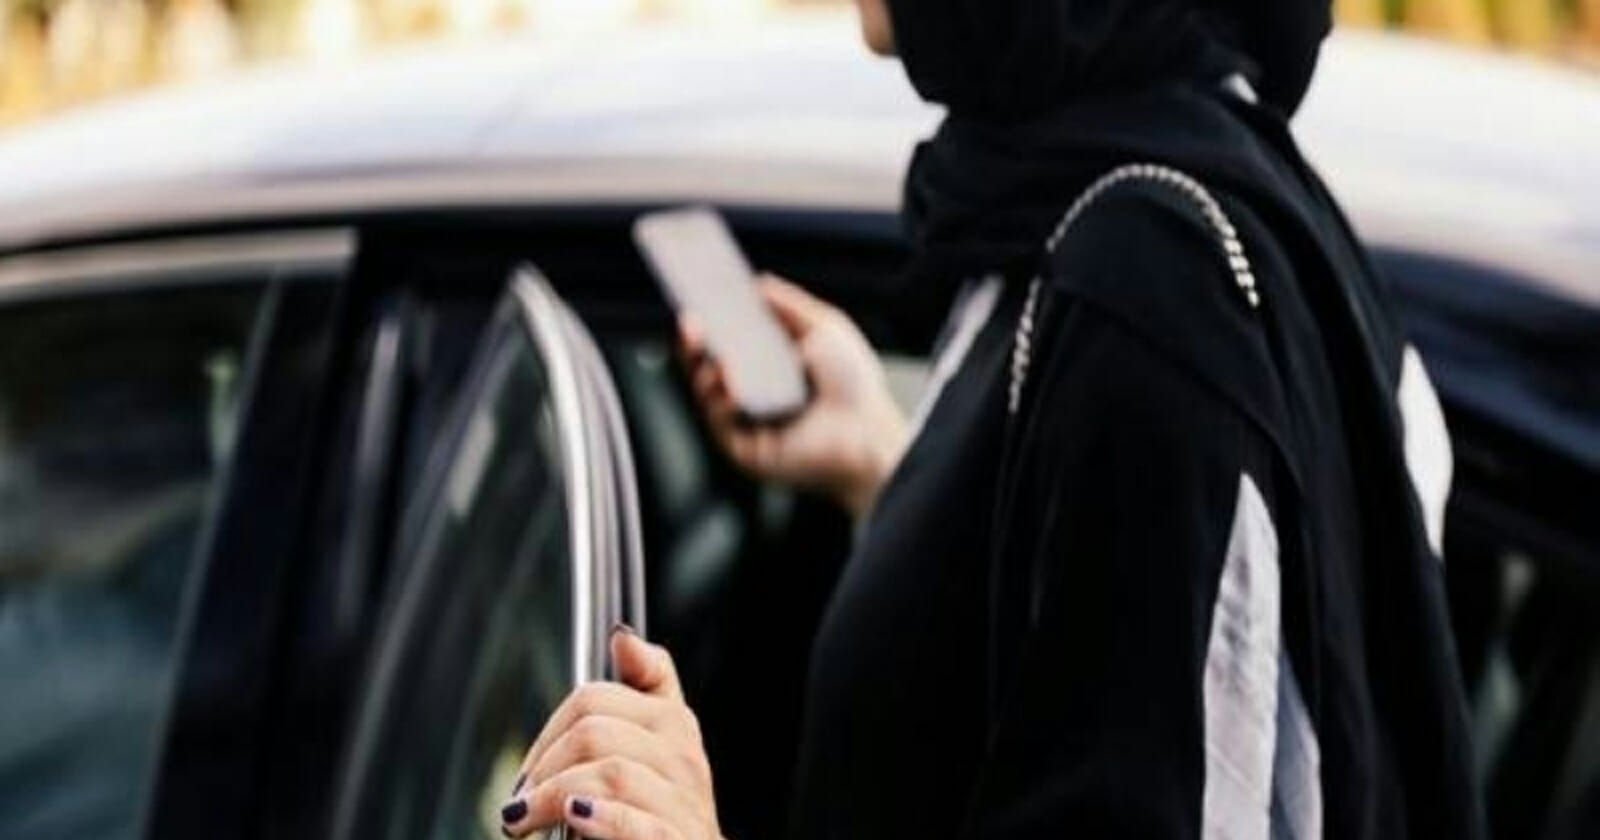 فتاة سعودية تبتز سائق أوبر watanserb.com